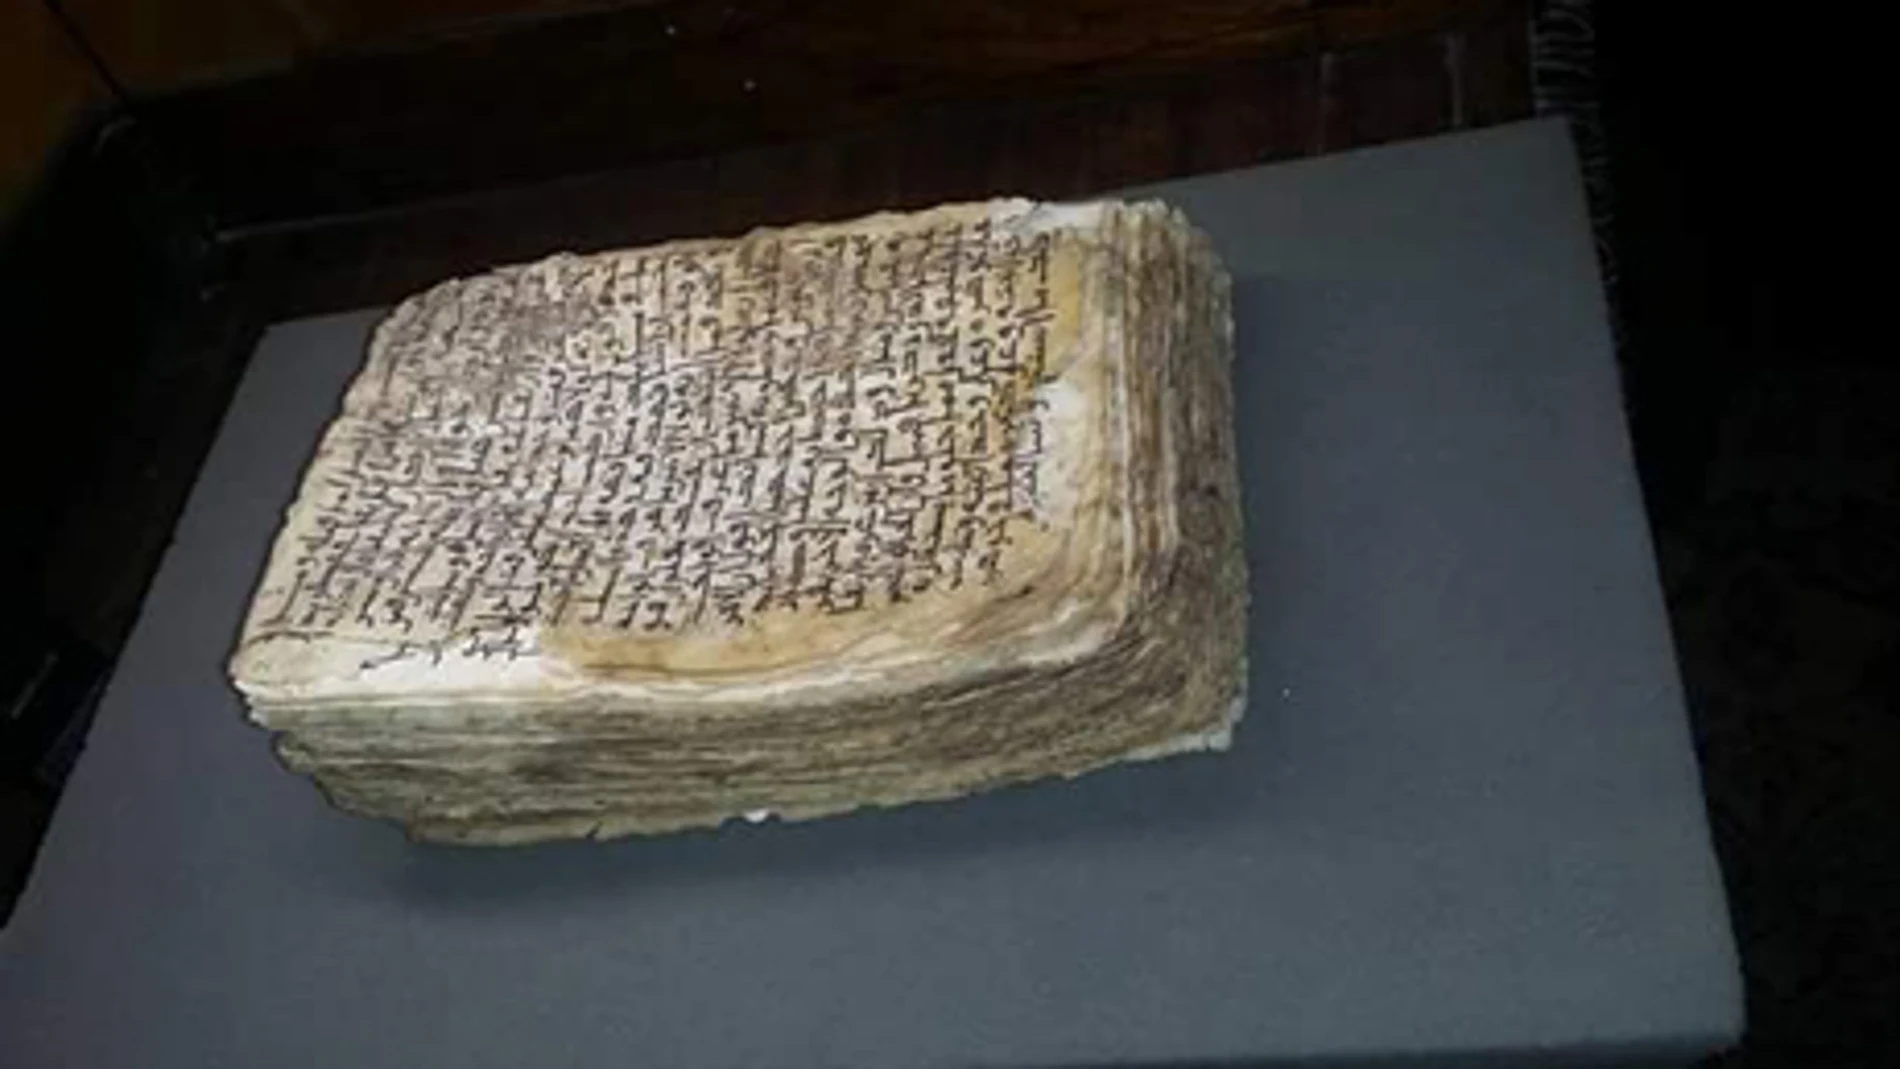 Foto del manuscrito hallado y publicado en el periódico egipcio